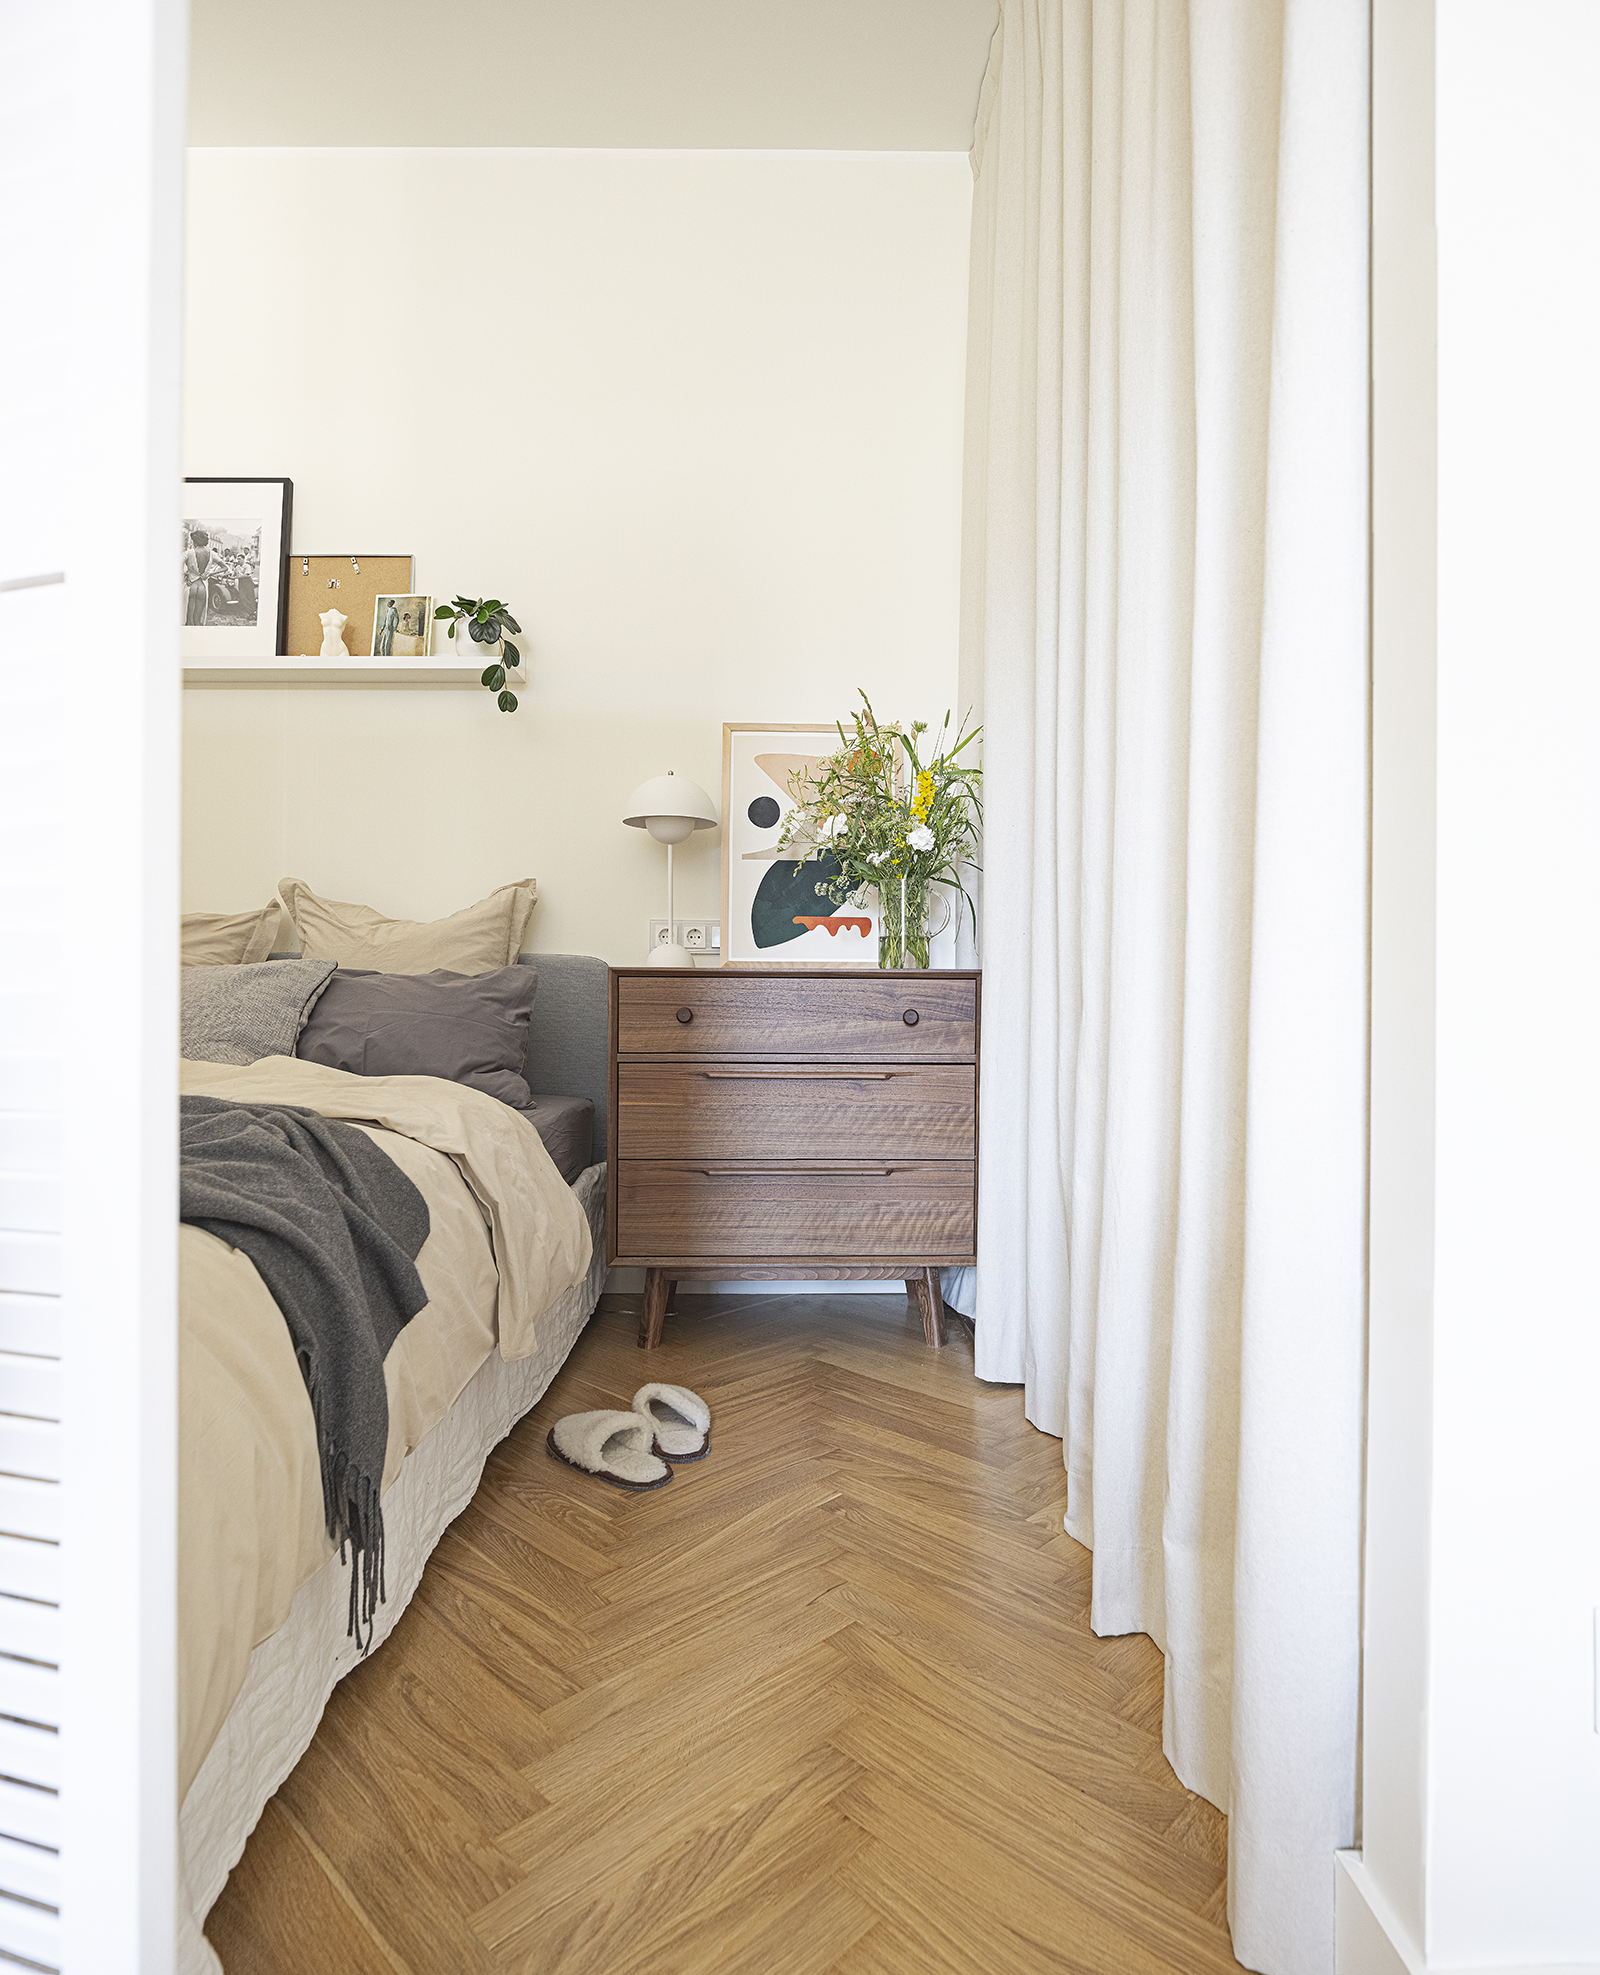 Phòng ngủ sau bức bình phong kiểu cửa chớp thiết kế tối giản, chỉ gồm một chiếc giường, kệ mở thanh lịch để trang trí và một chiếc táp đầu giường vuông vức. Tất cả nội thất gỗ trong nhà đều được làm từ gỗ óc chó hoặc gỗ sồi sang trọng.